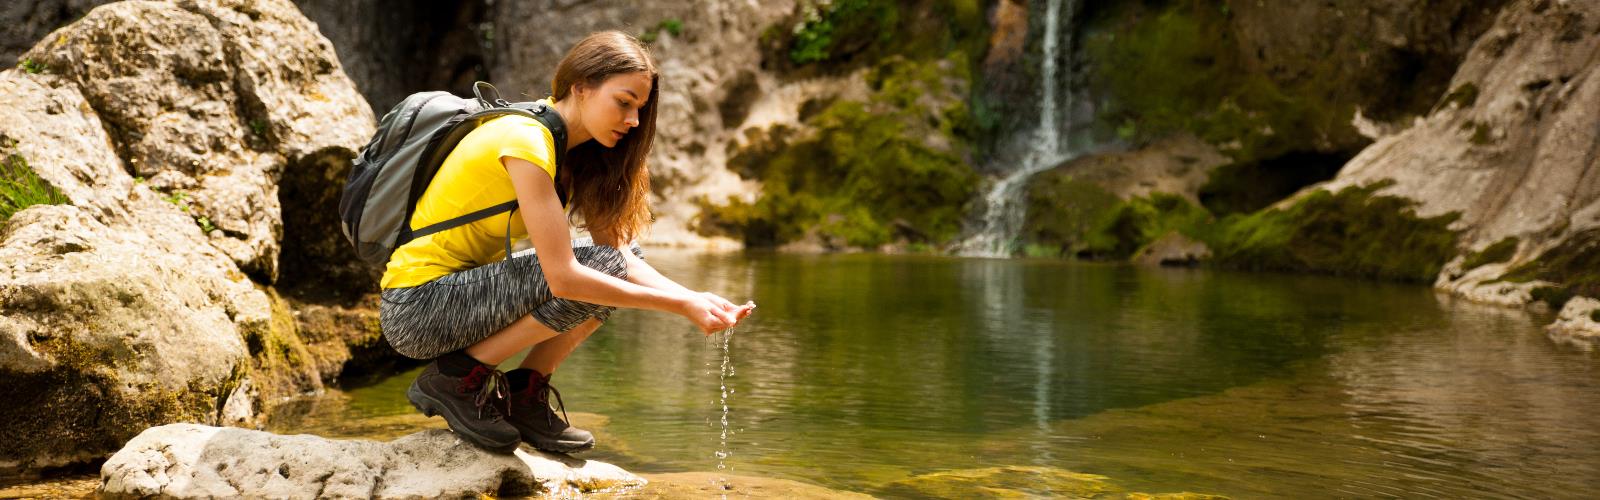 Comment transporter l'eau en randonnée ? – L'Instant Vagabond